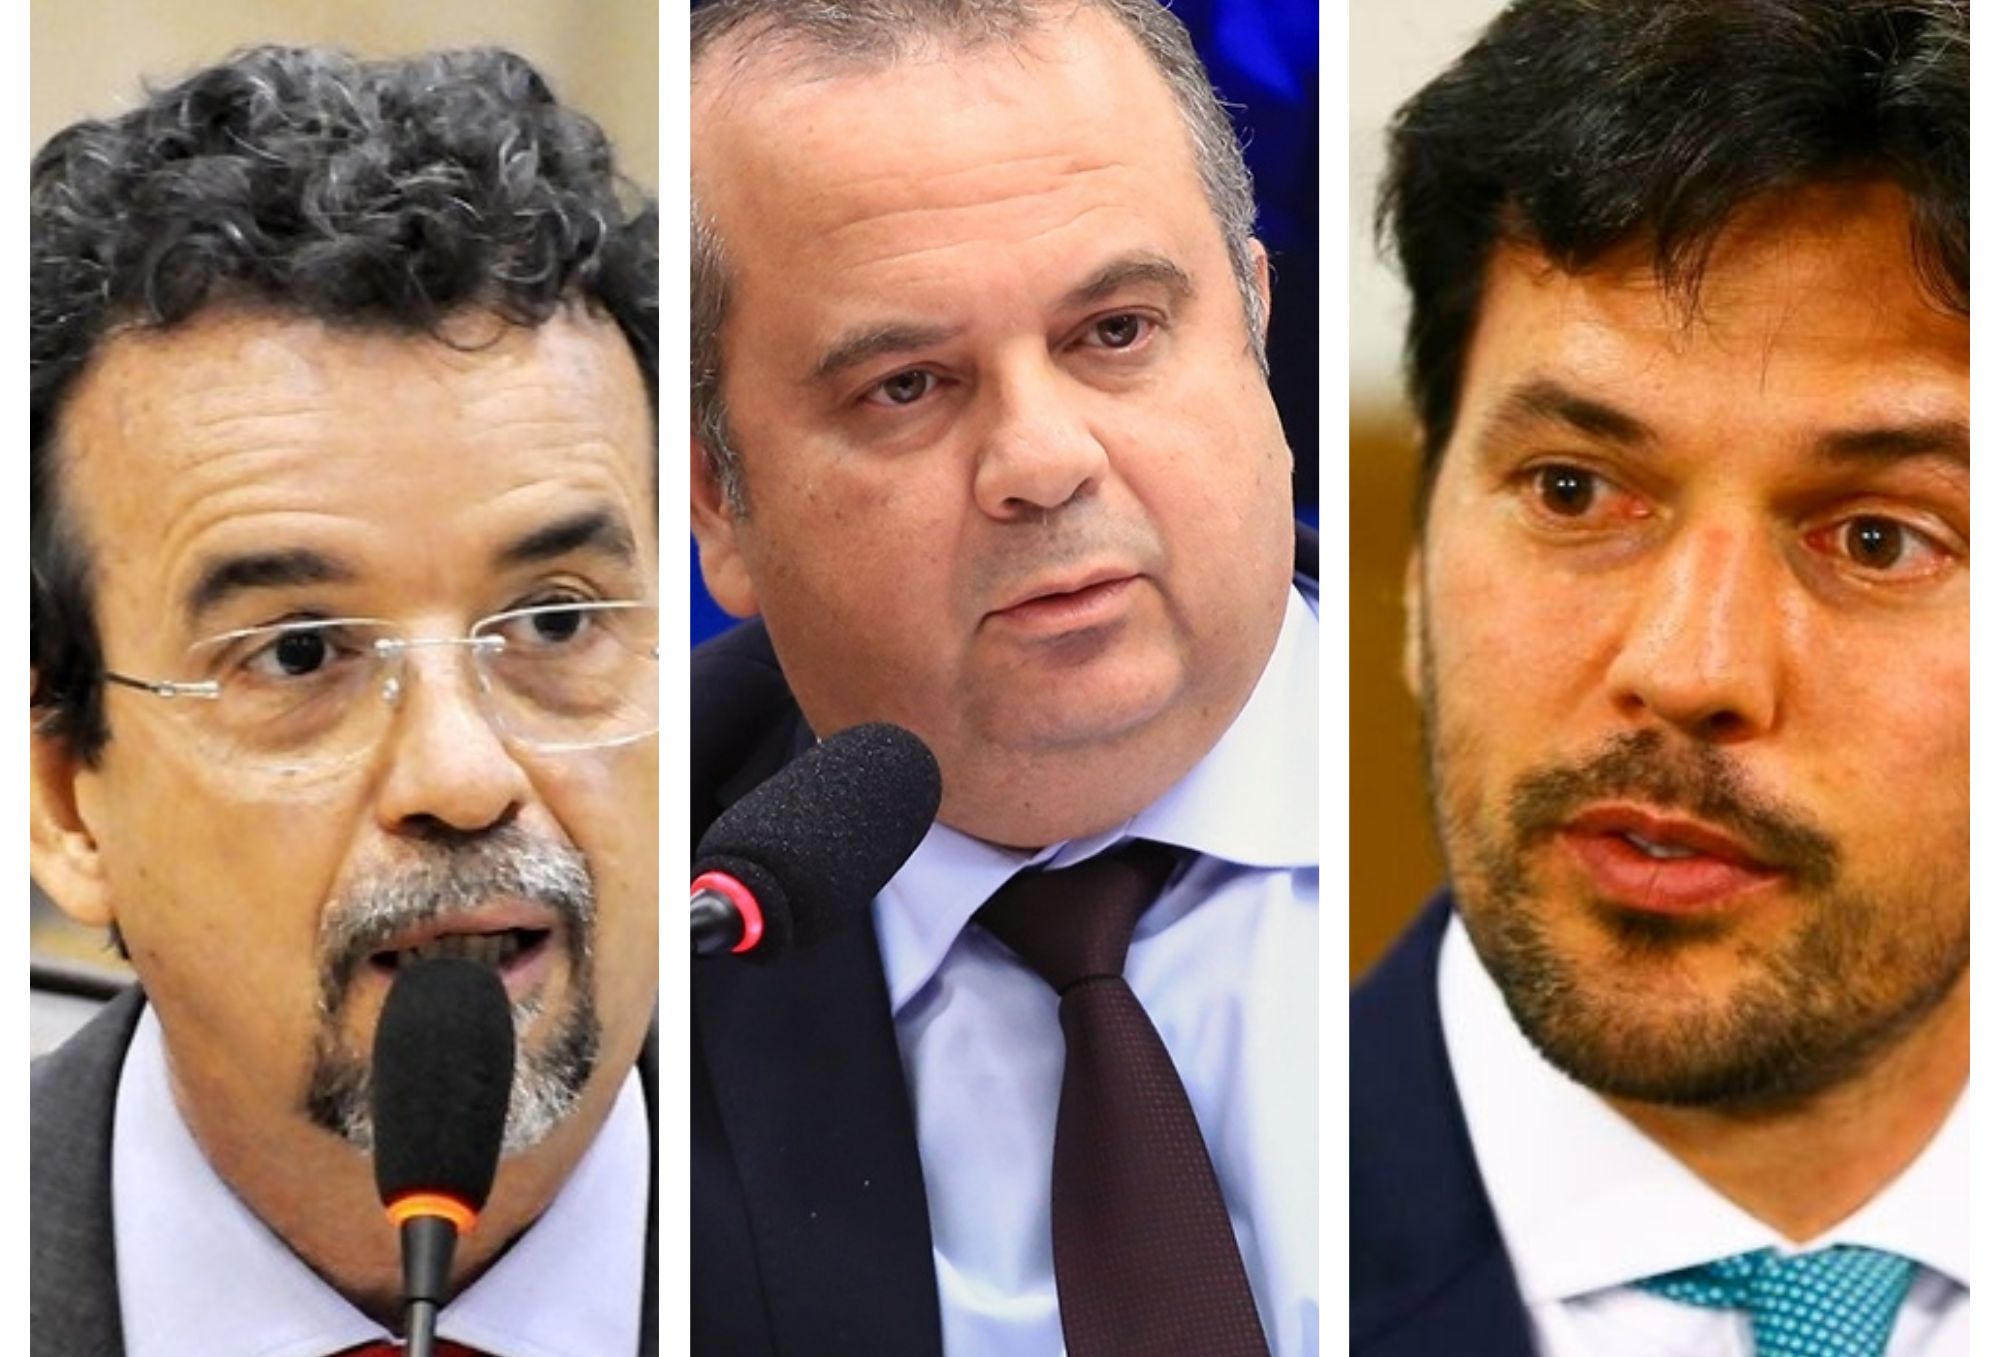 “Rogério Marinho e Fábio Faria estão disputando quem agrada mais o bolsonarismo e, para isso, precisam mentir”, critica Mineiro